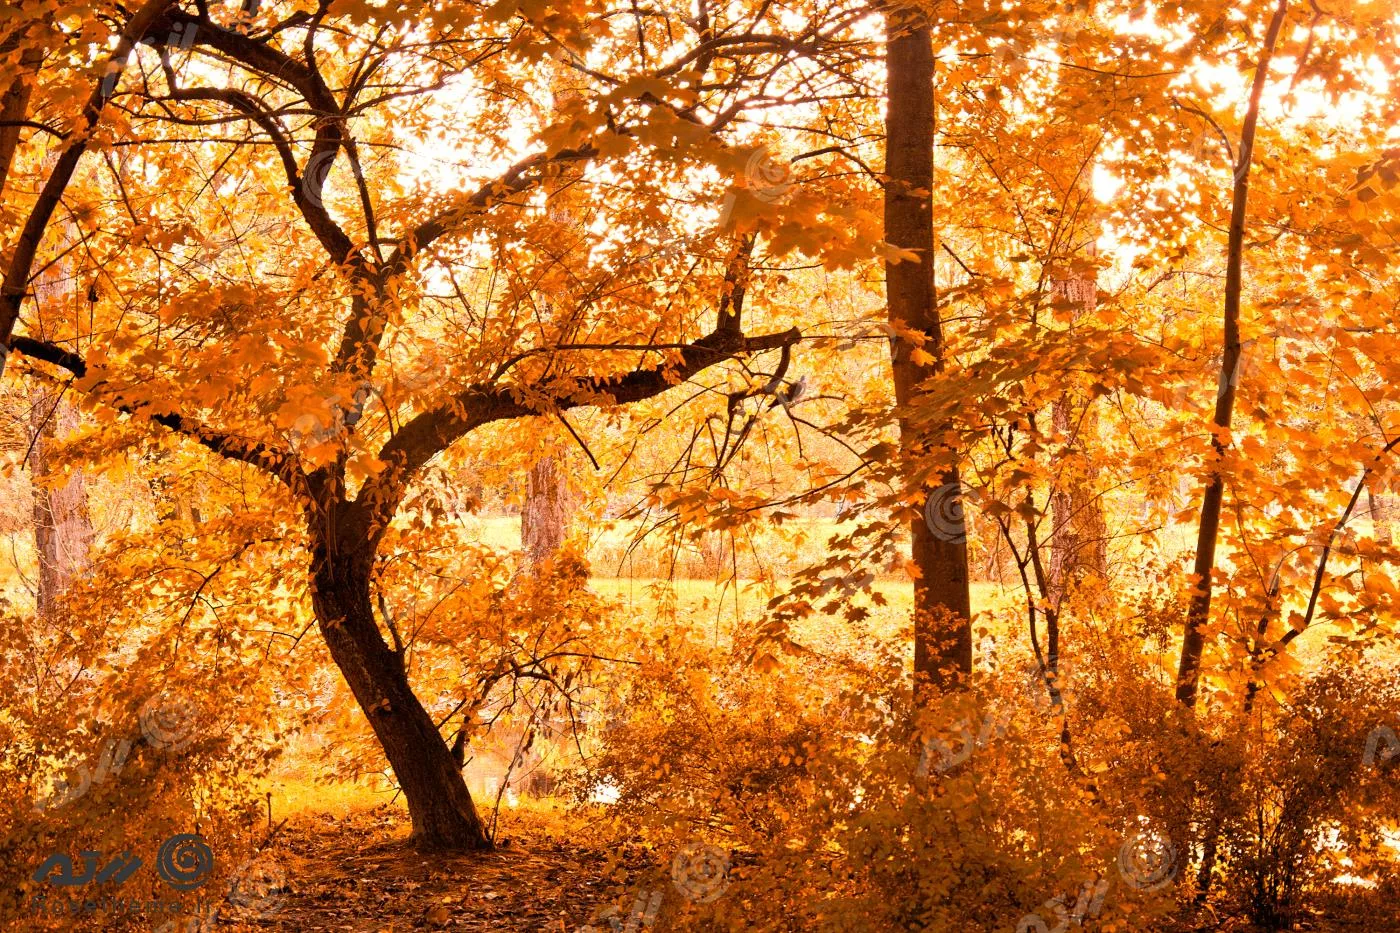 عکس با کیفیت فوق العاده از درخت های پاییزی و برگ‌رییزان پاییز مناسب برای استفاده به عنوان تصویر زمینه 22031